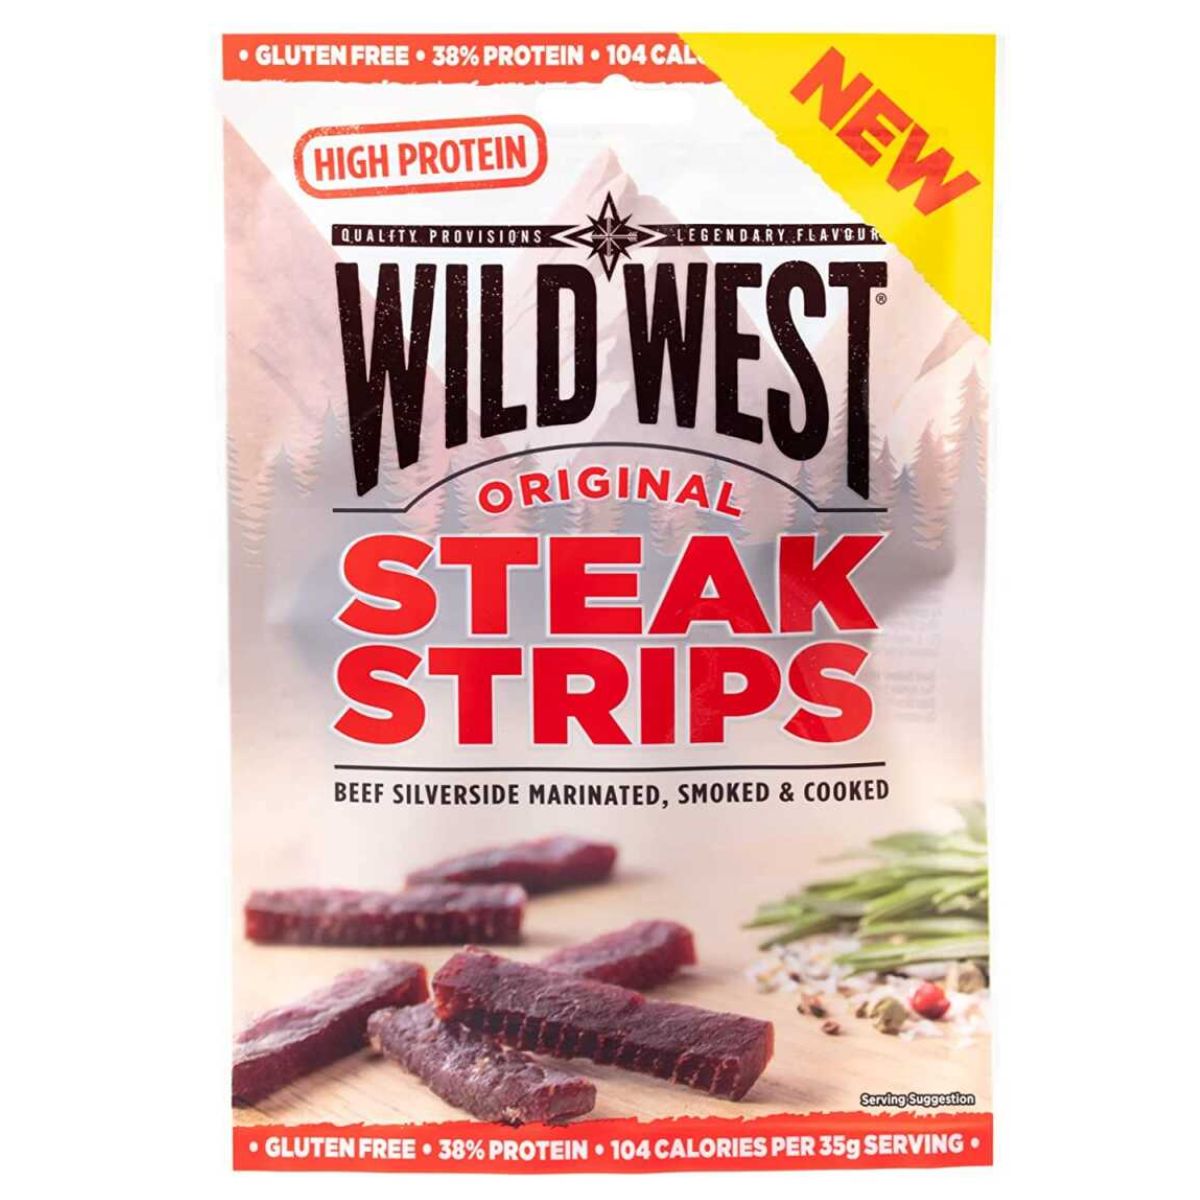 Wild West - Steak Strips - 25g original steak strips.